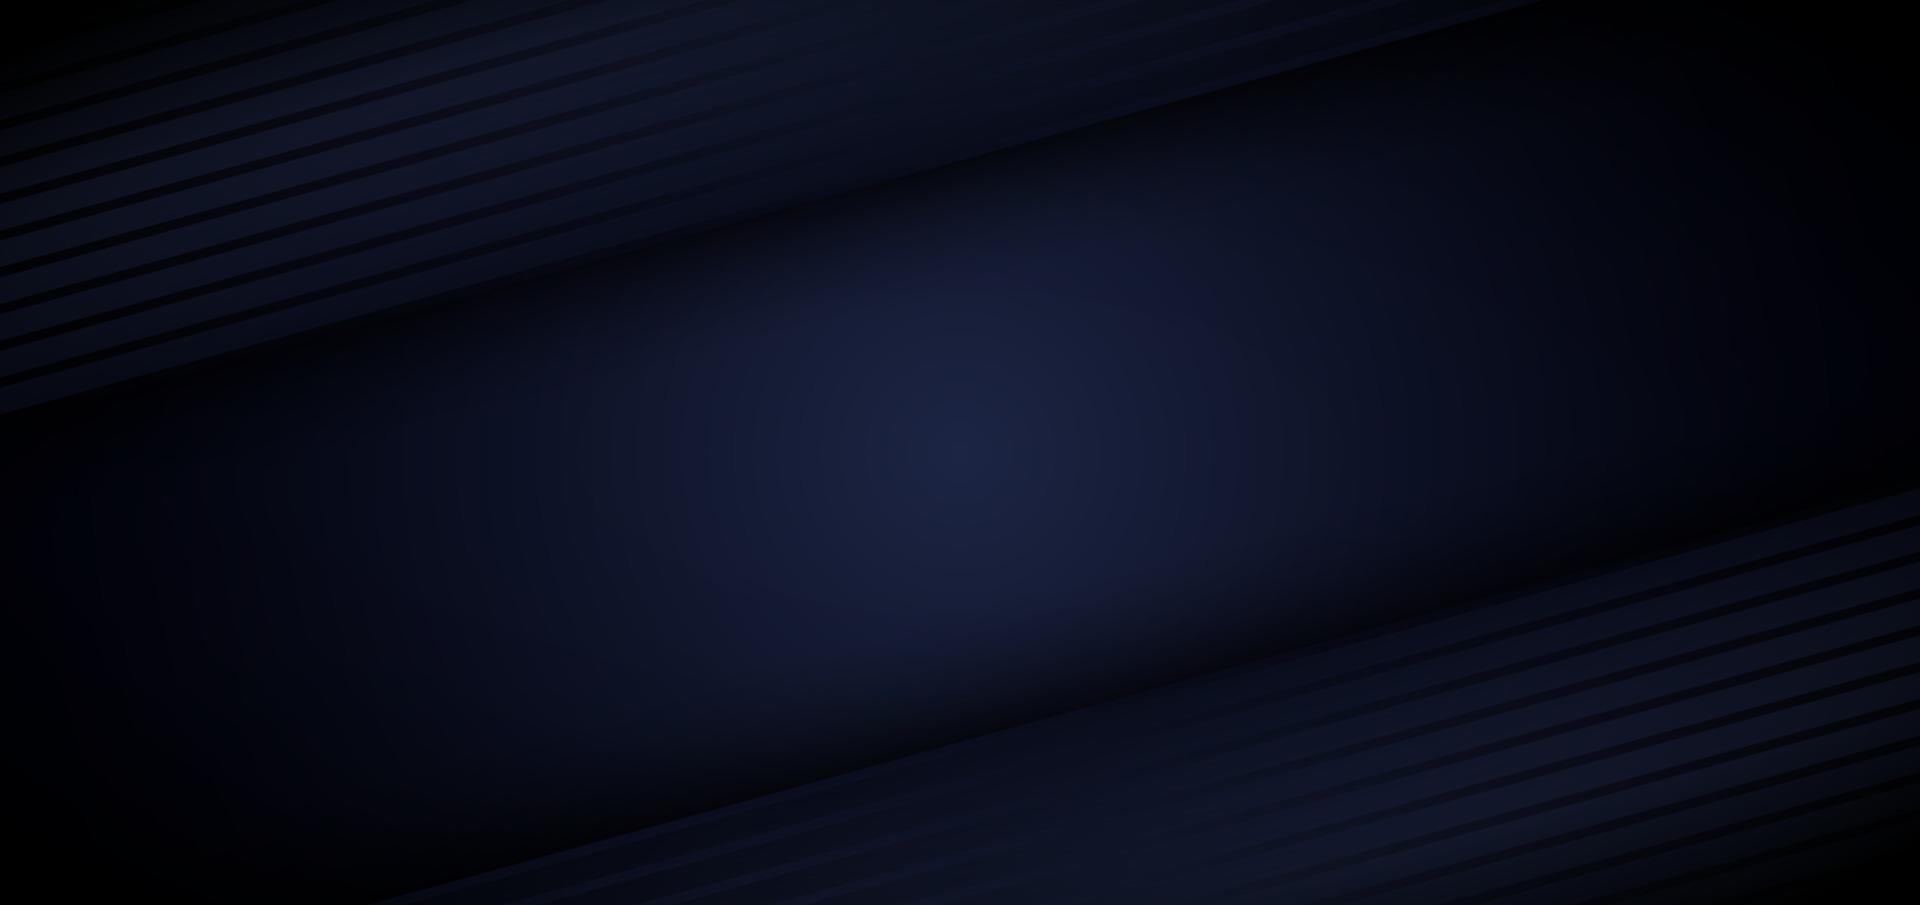 Couche de chevauchement de lignes géométriques et diagonales abstraites 3d modèle bleu sur fond sombre vecteur